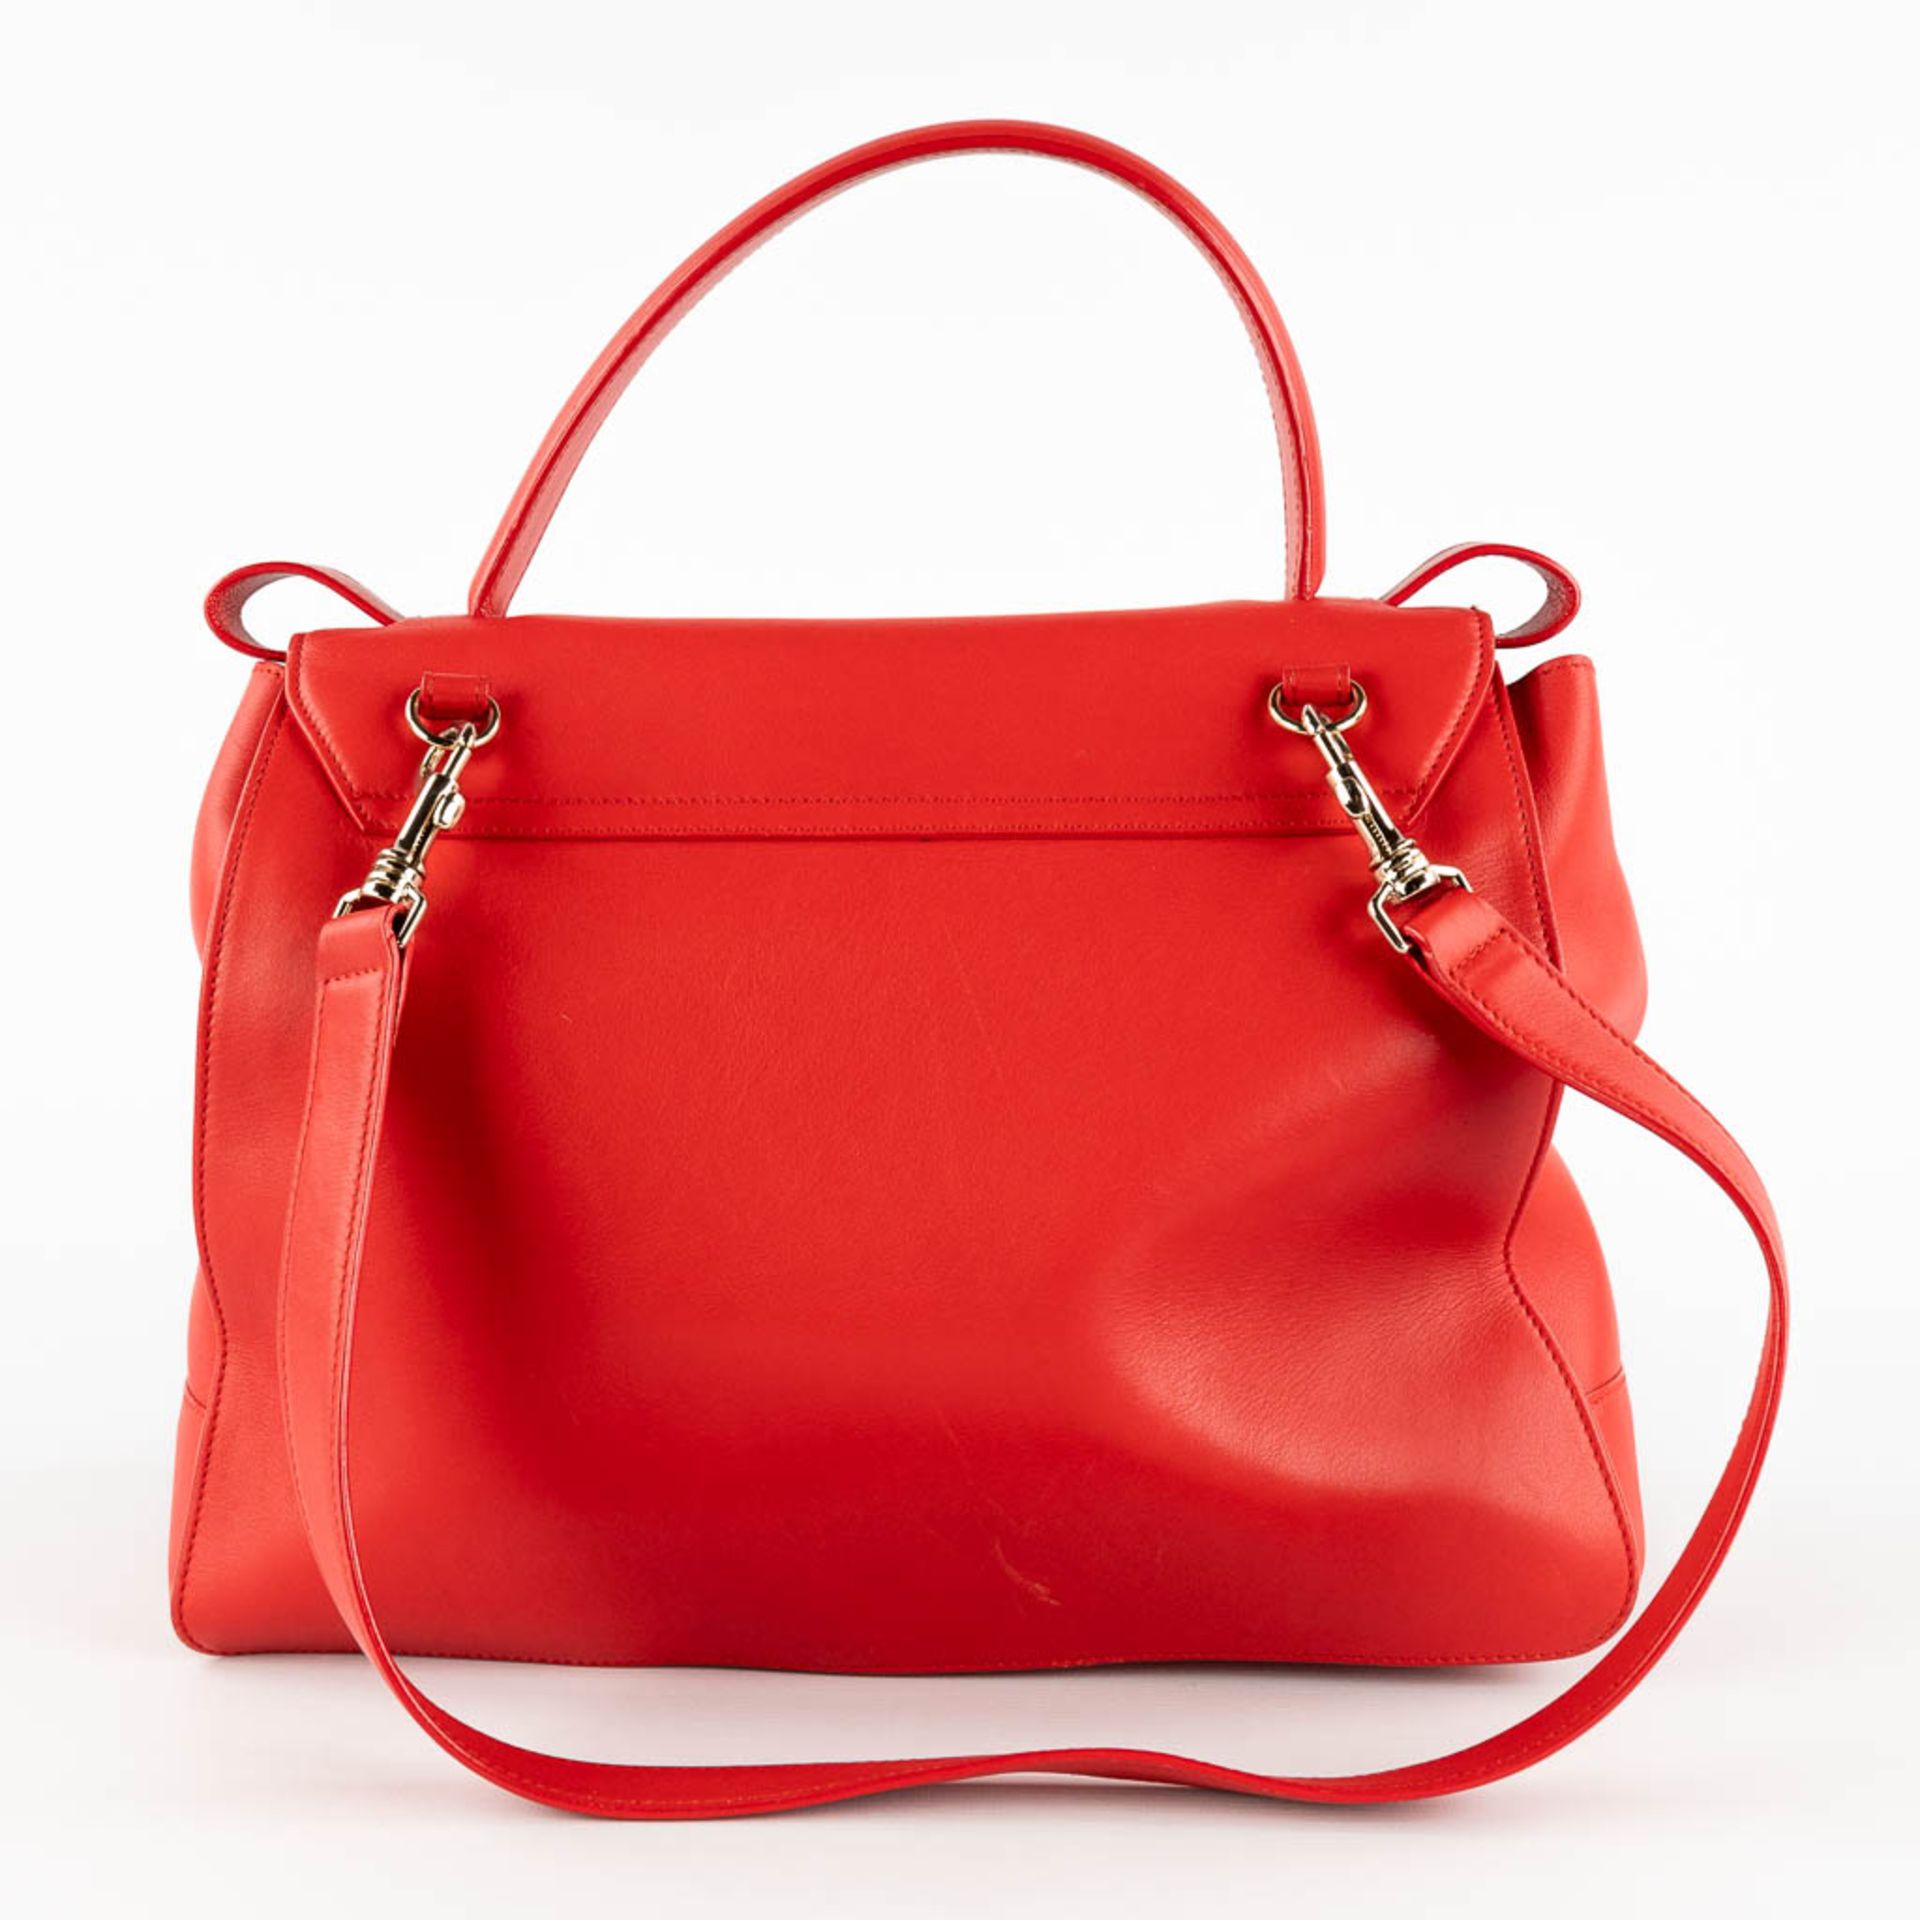 Escada, a handbag made of red leather. (W:33 x H:28 cm) - Bild 5 aus 17